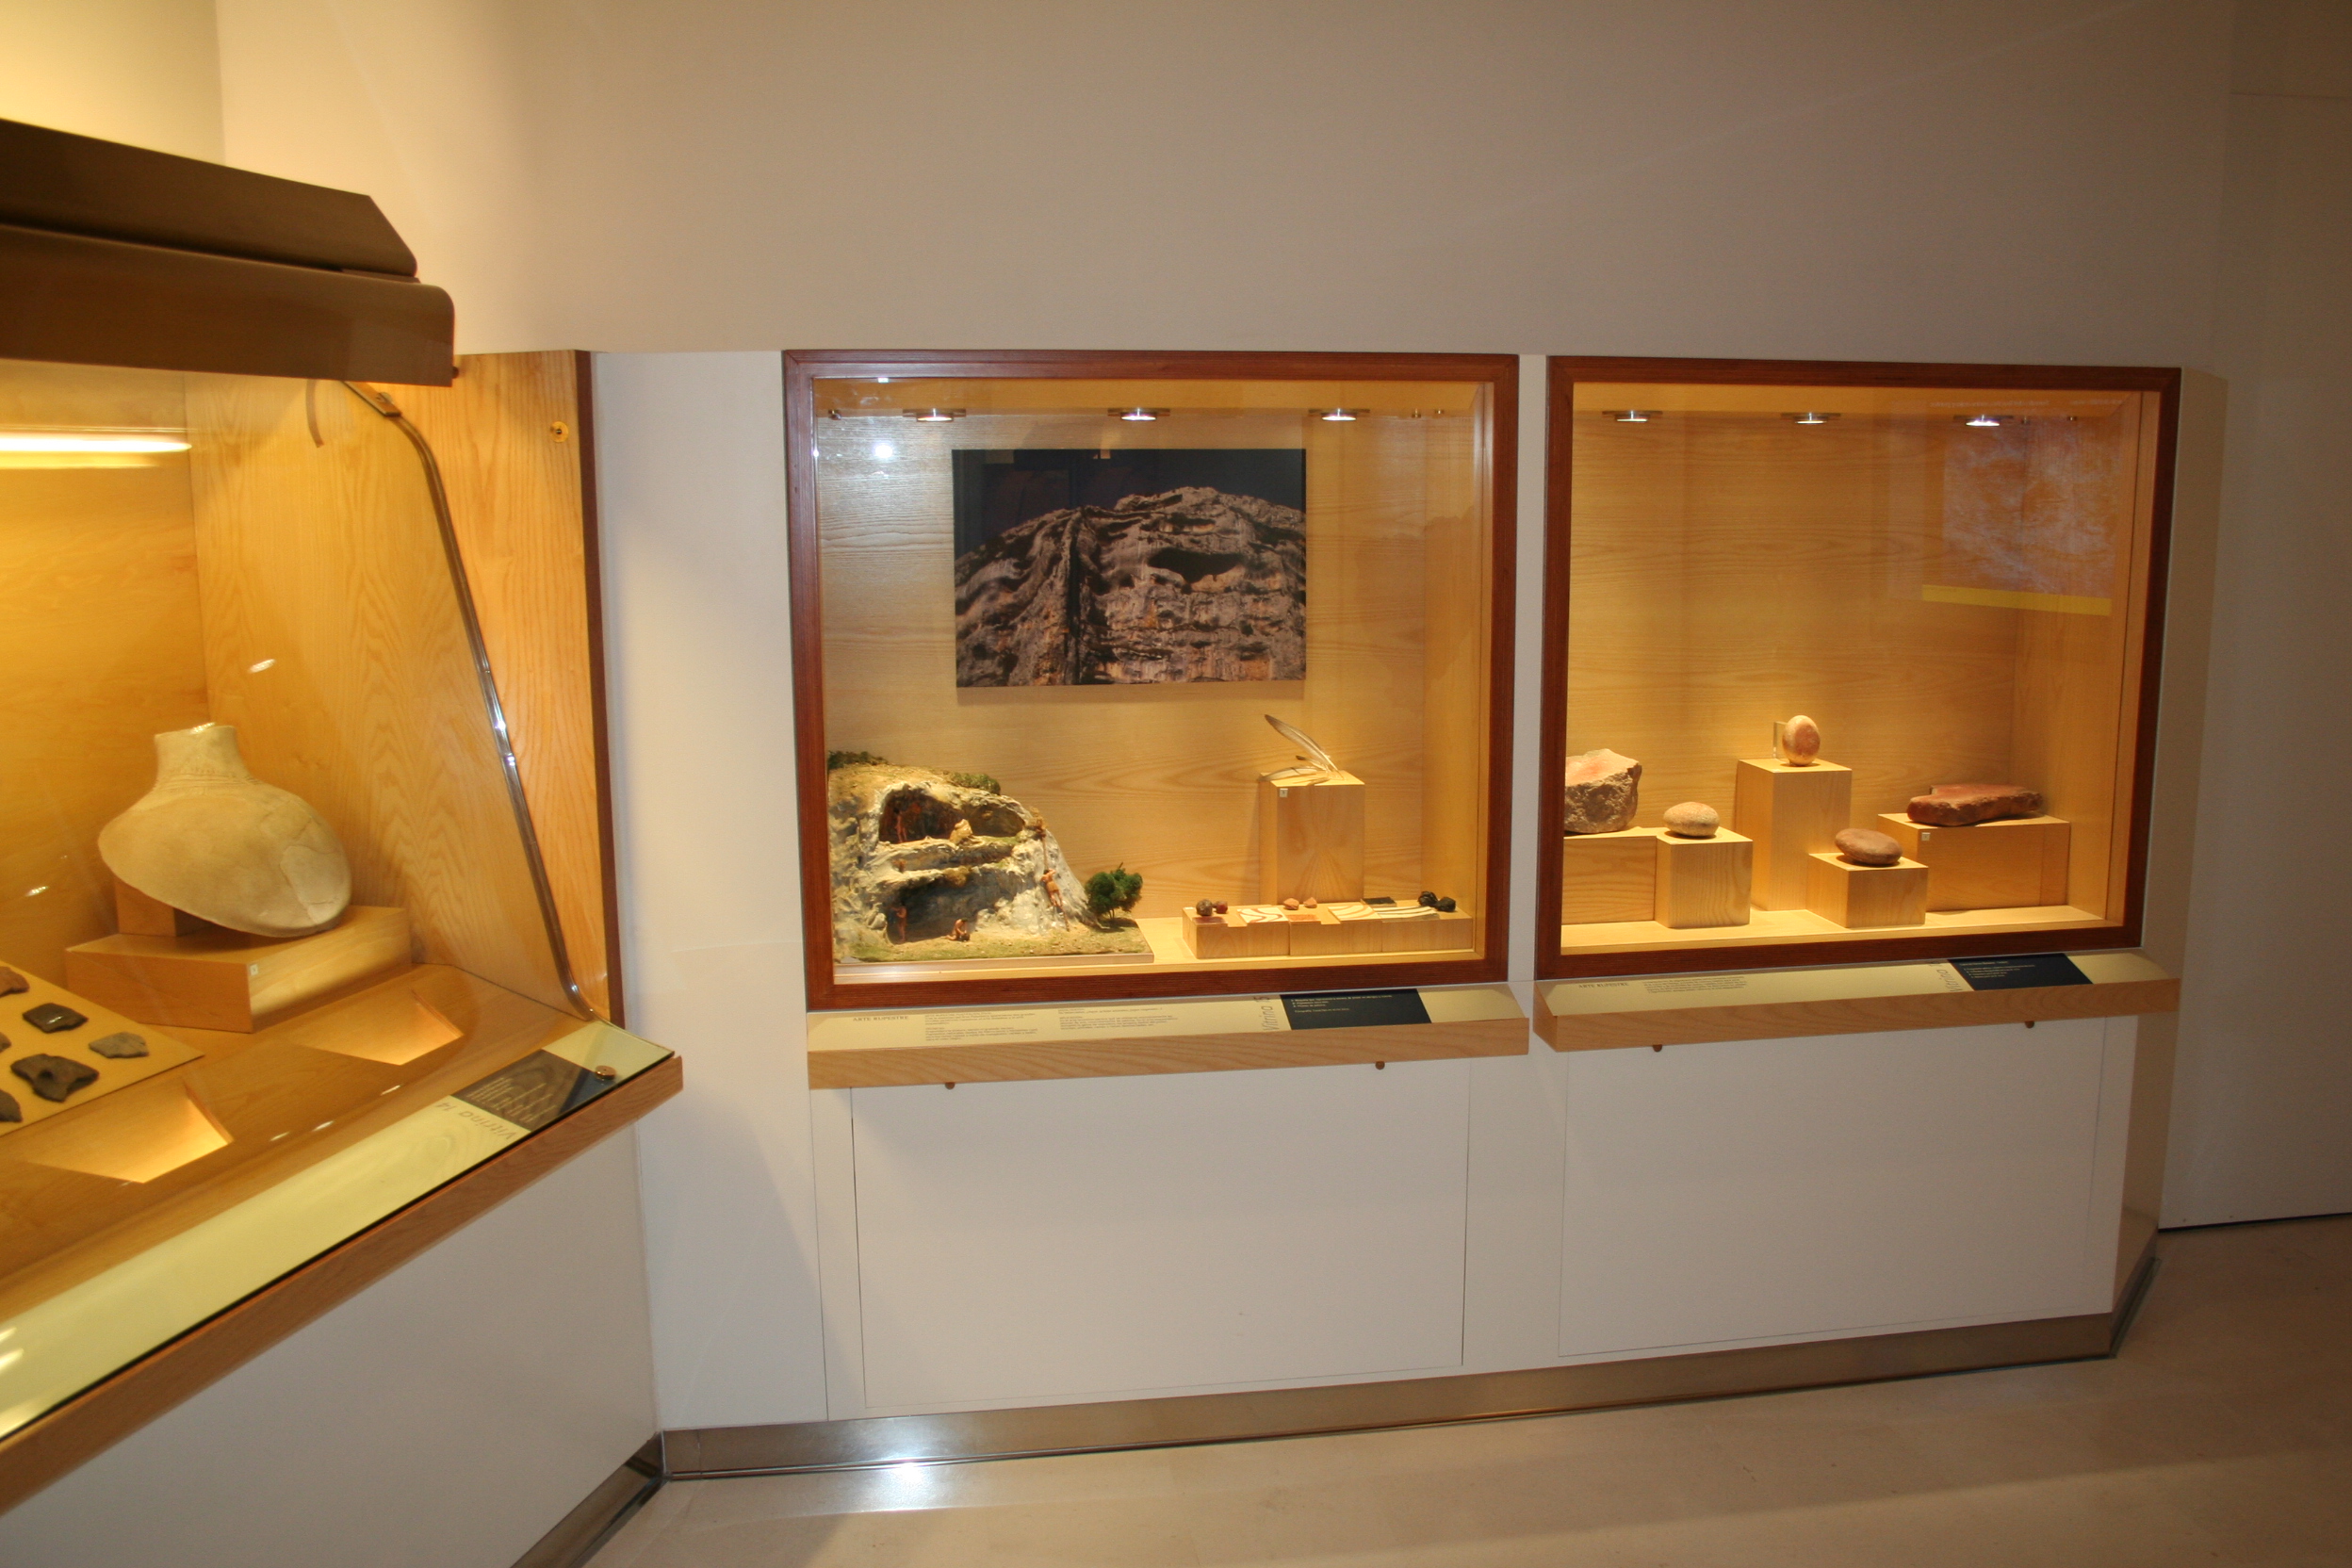 Museo de Huesca. Sala 1, vitrinas dedicadas al arte rupestre. (Fot. MdH)